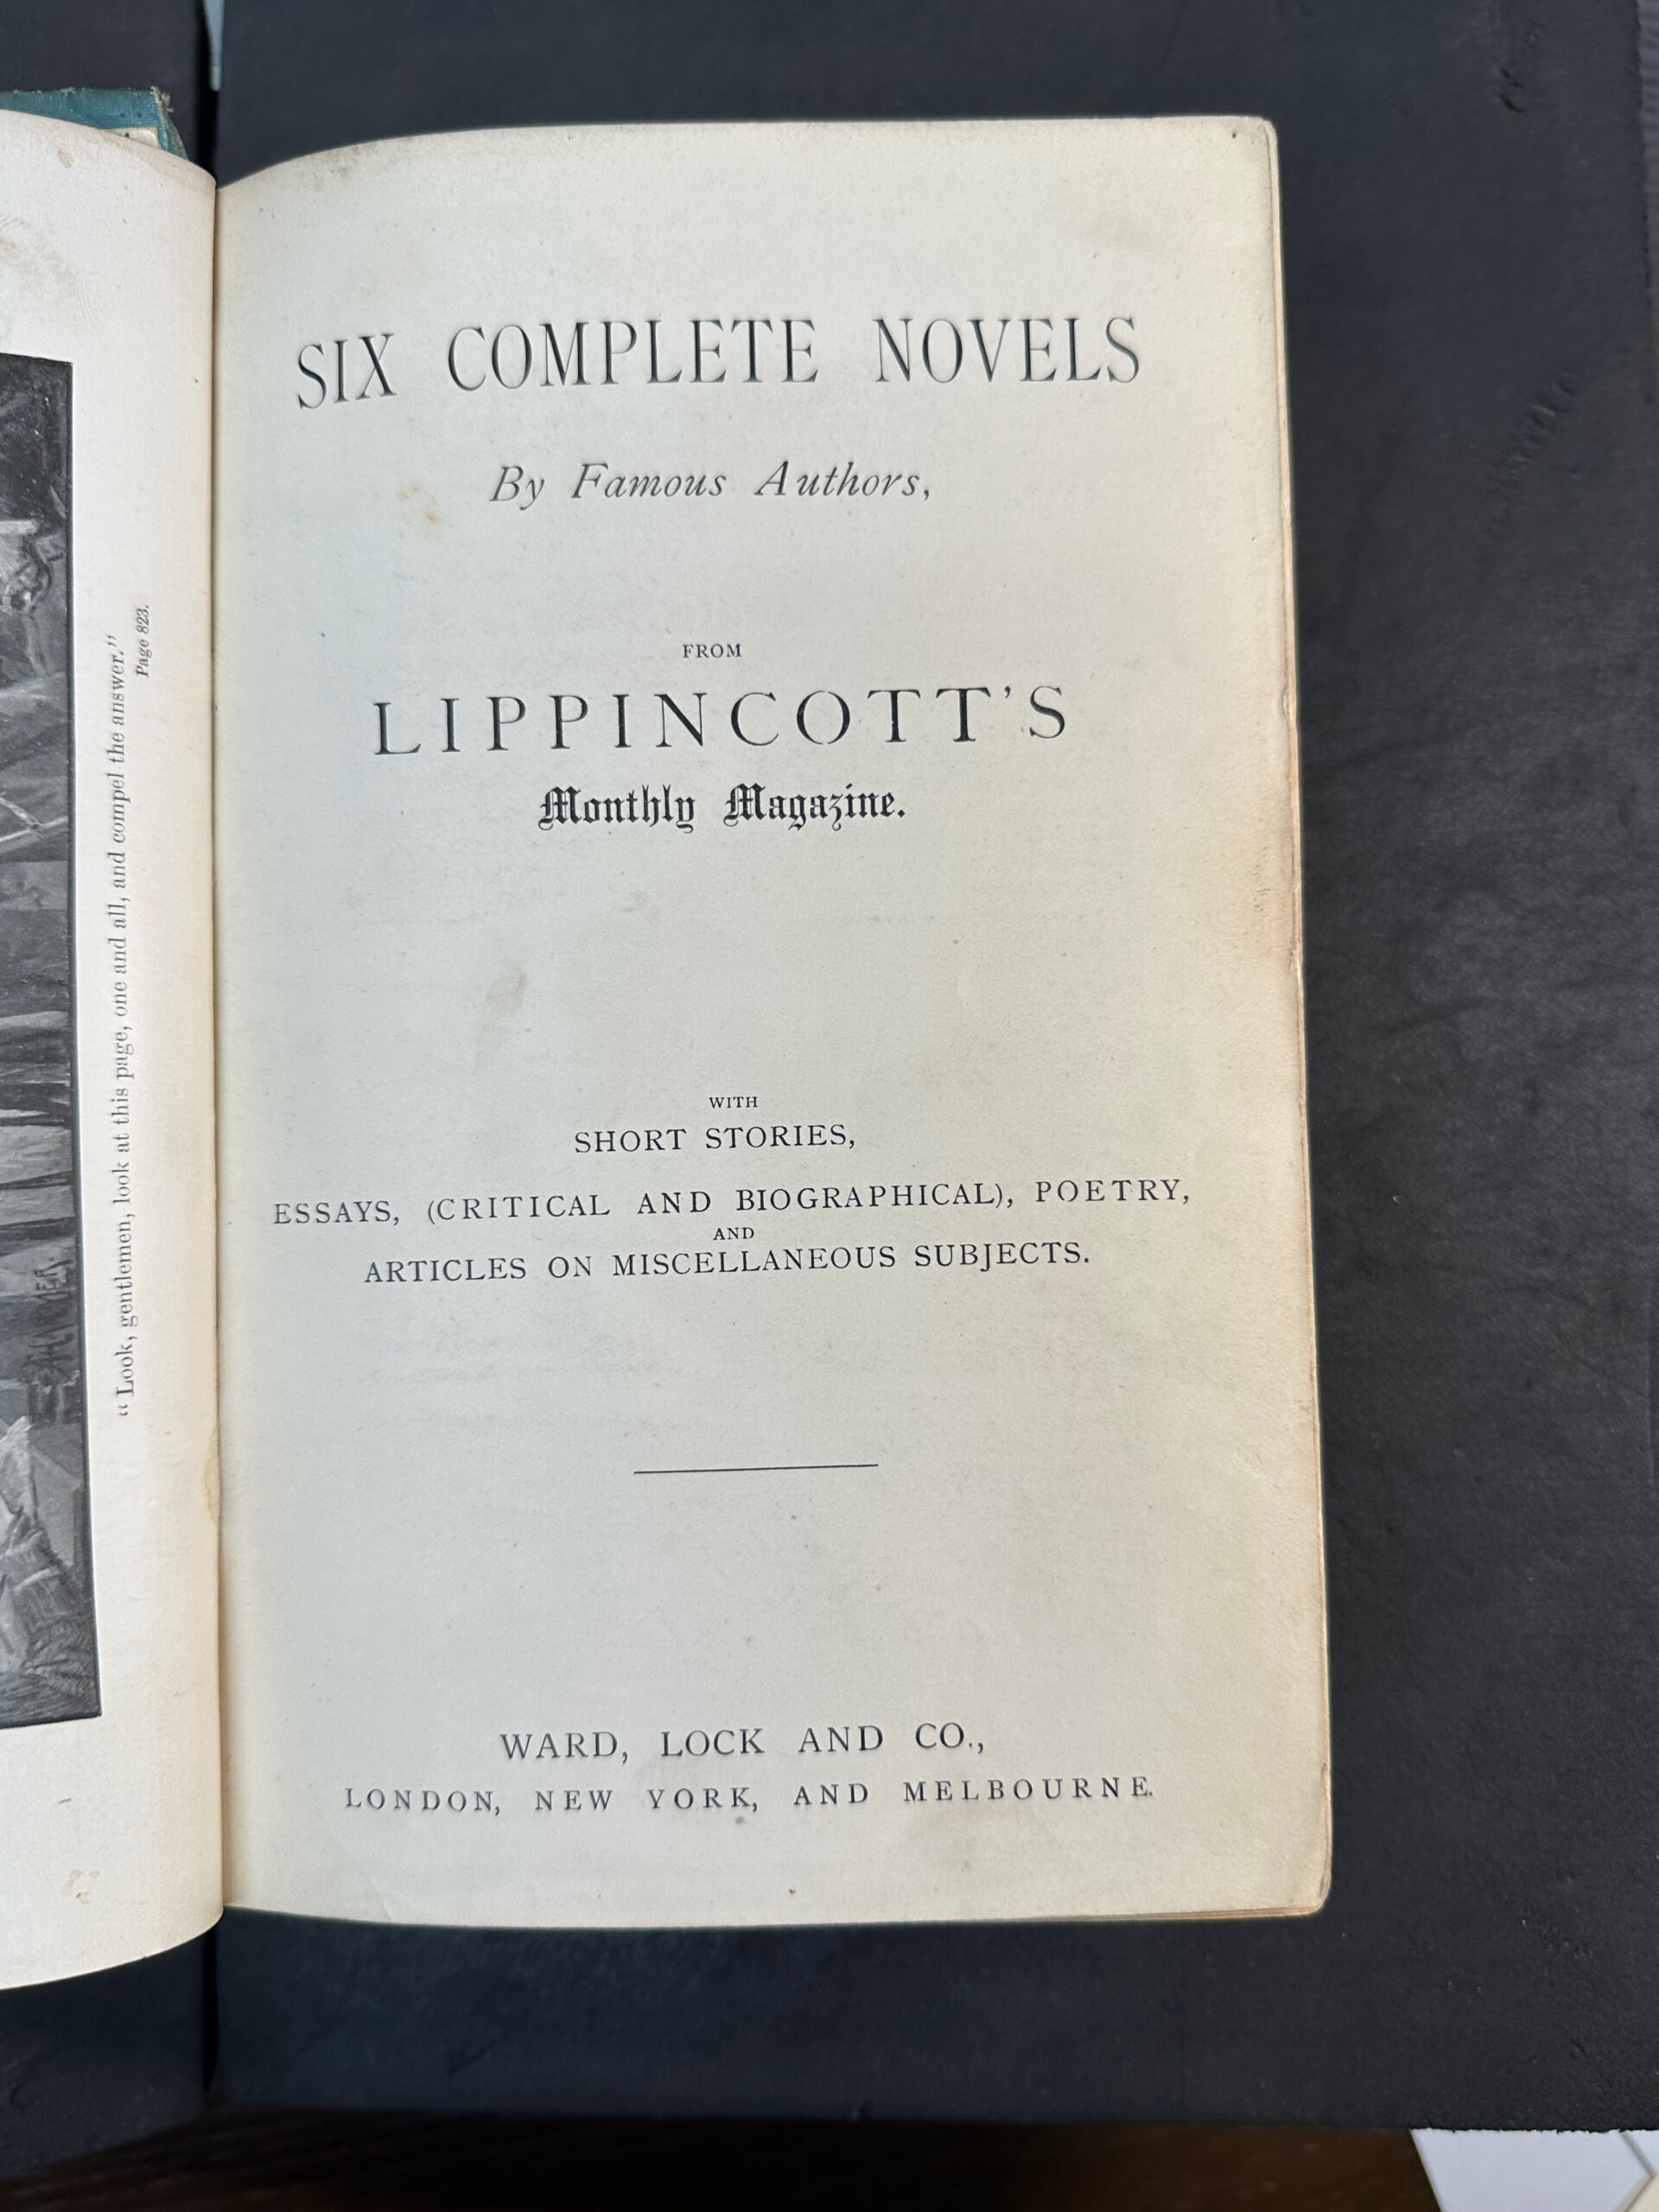 Six Complete Novels, 1890, PR5819 .P611 1890b *